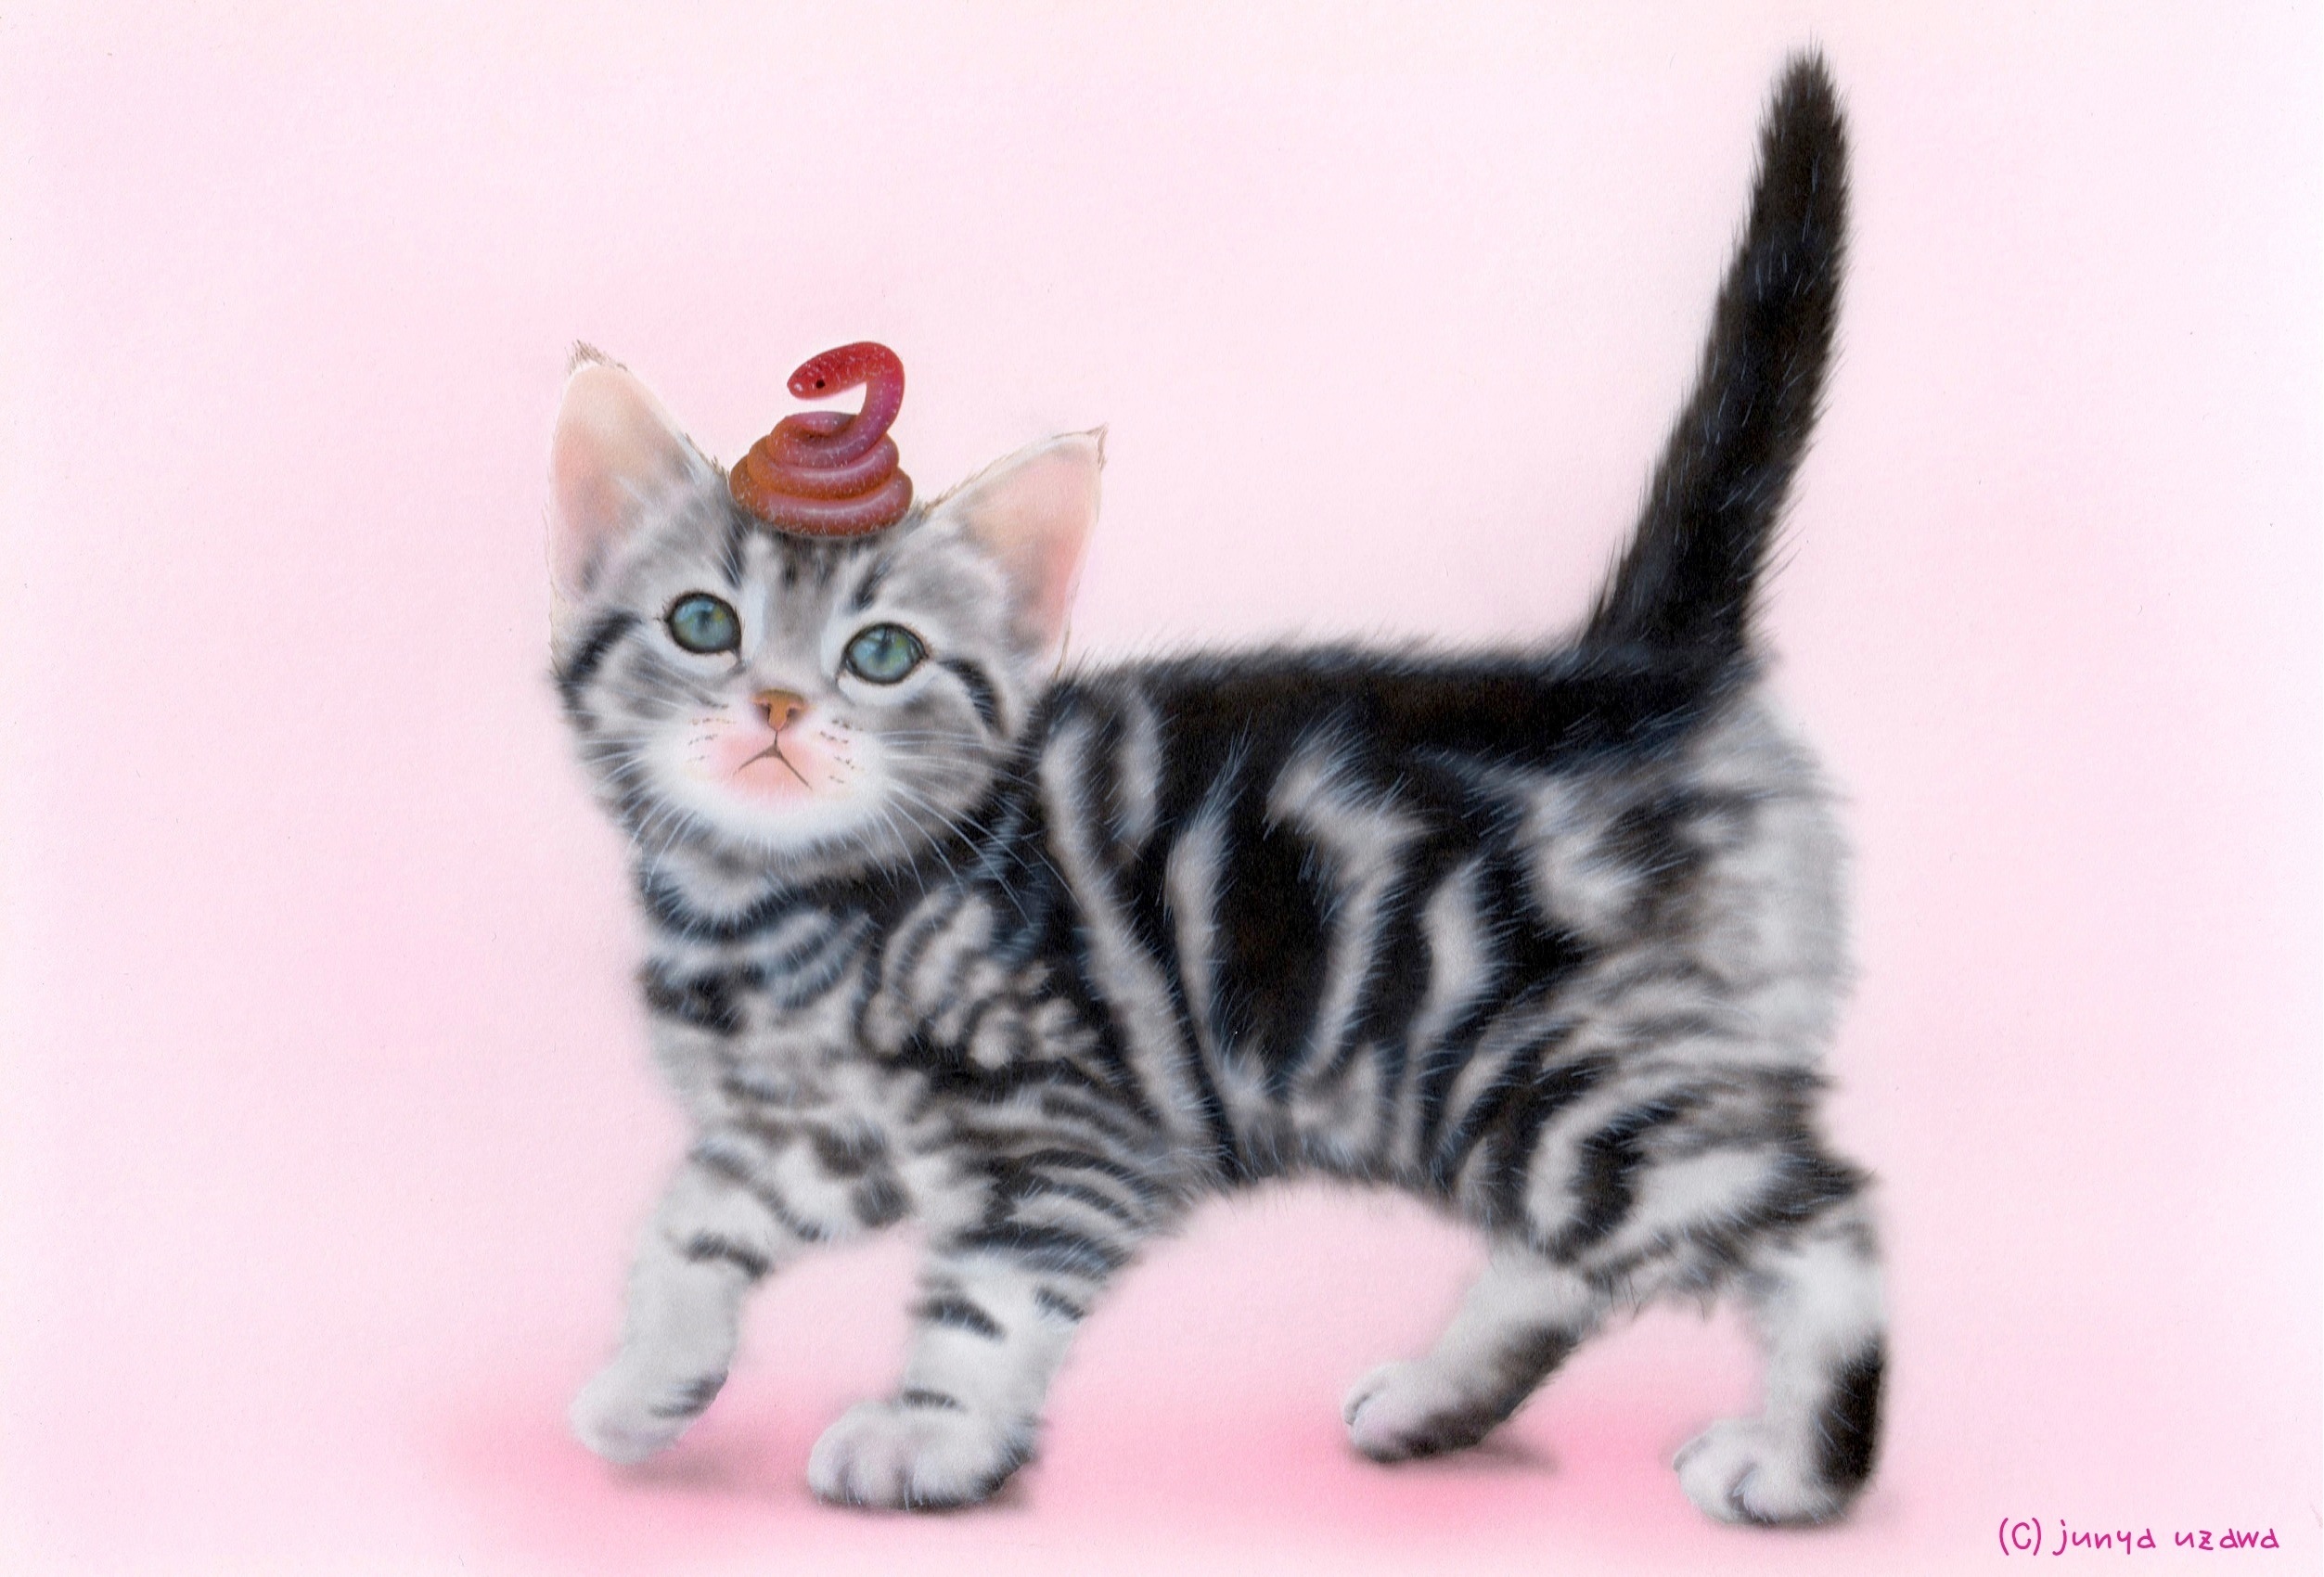 リアリズム絵画 動物の絵 動物イラスト 子猫の絵 萌獣 ヘビのせ猫 Happy New Year 13 世界最小のヘビ アメリカン ショートヘア